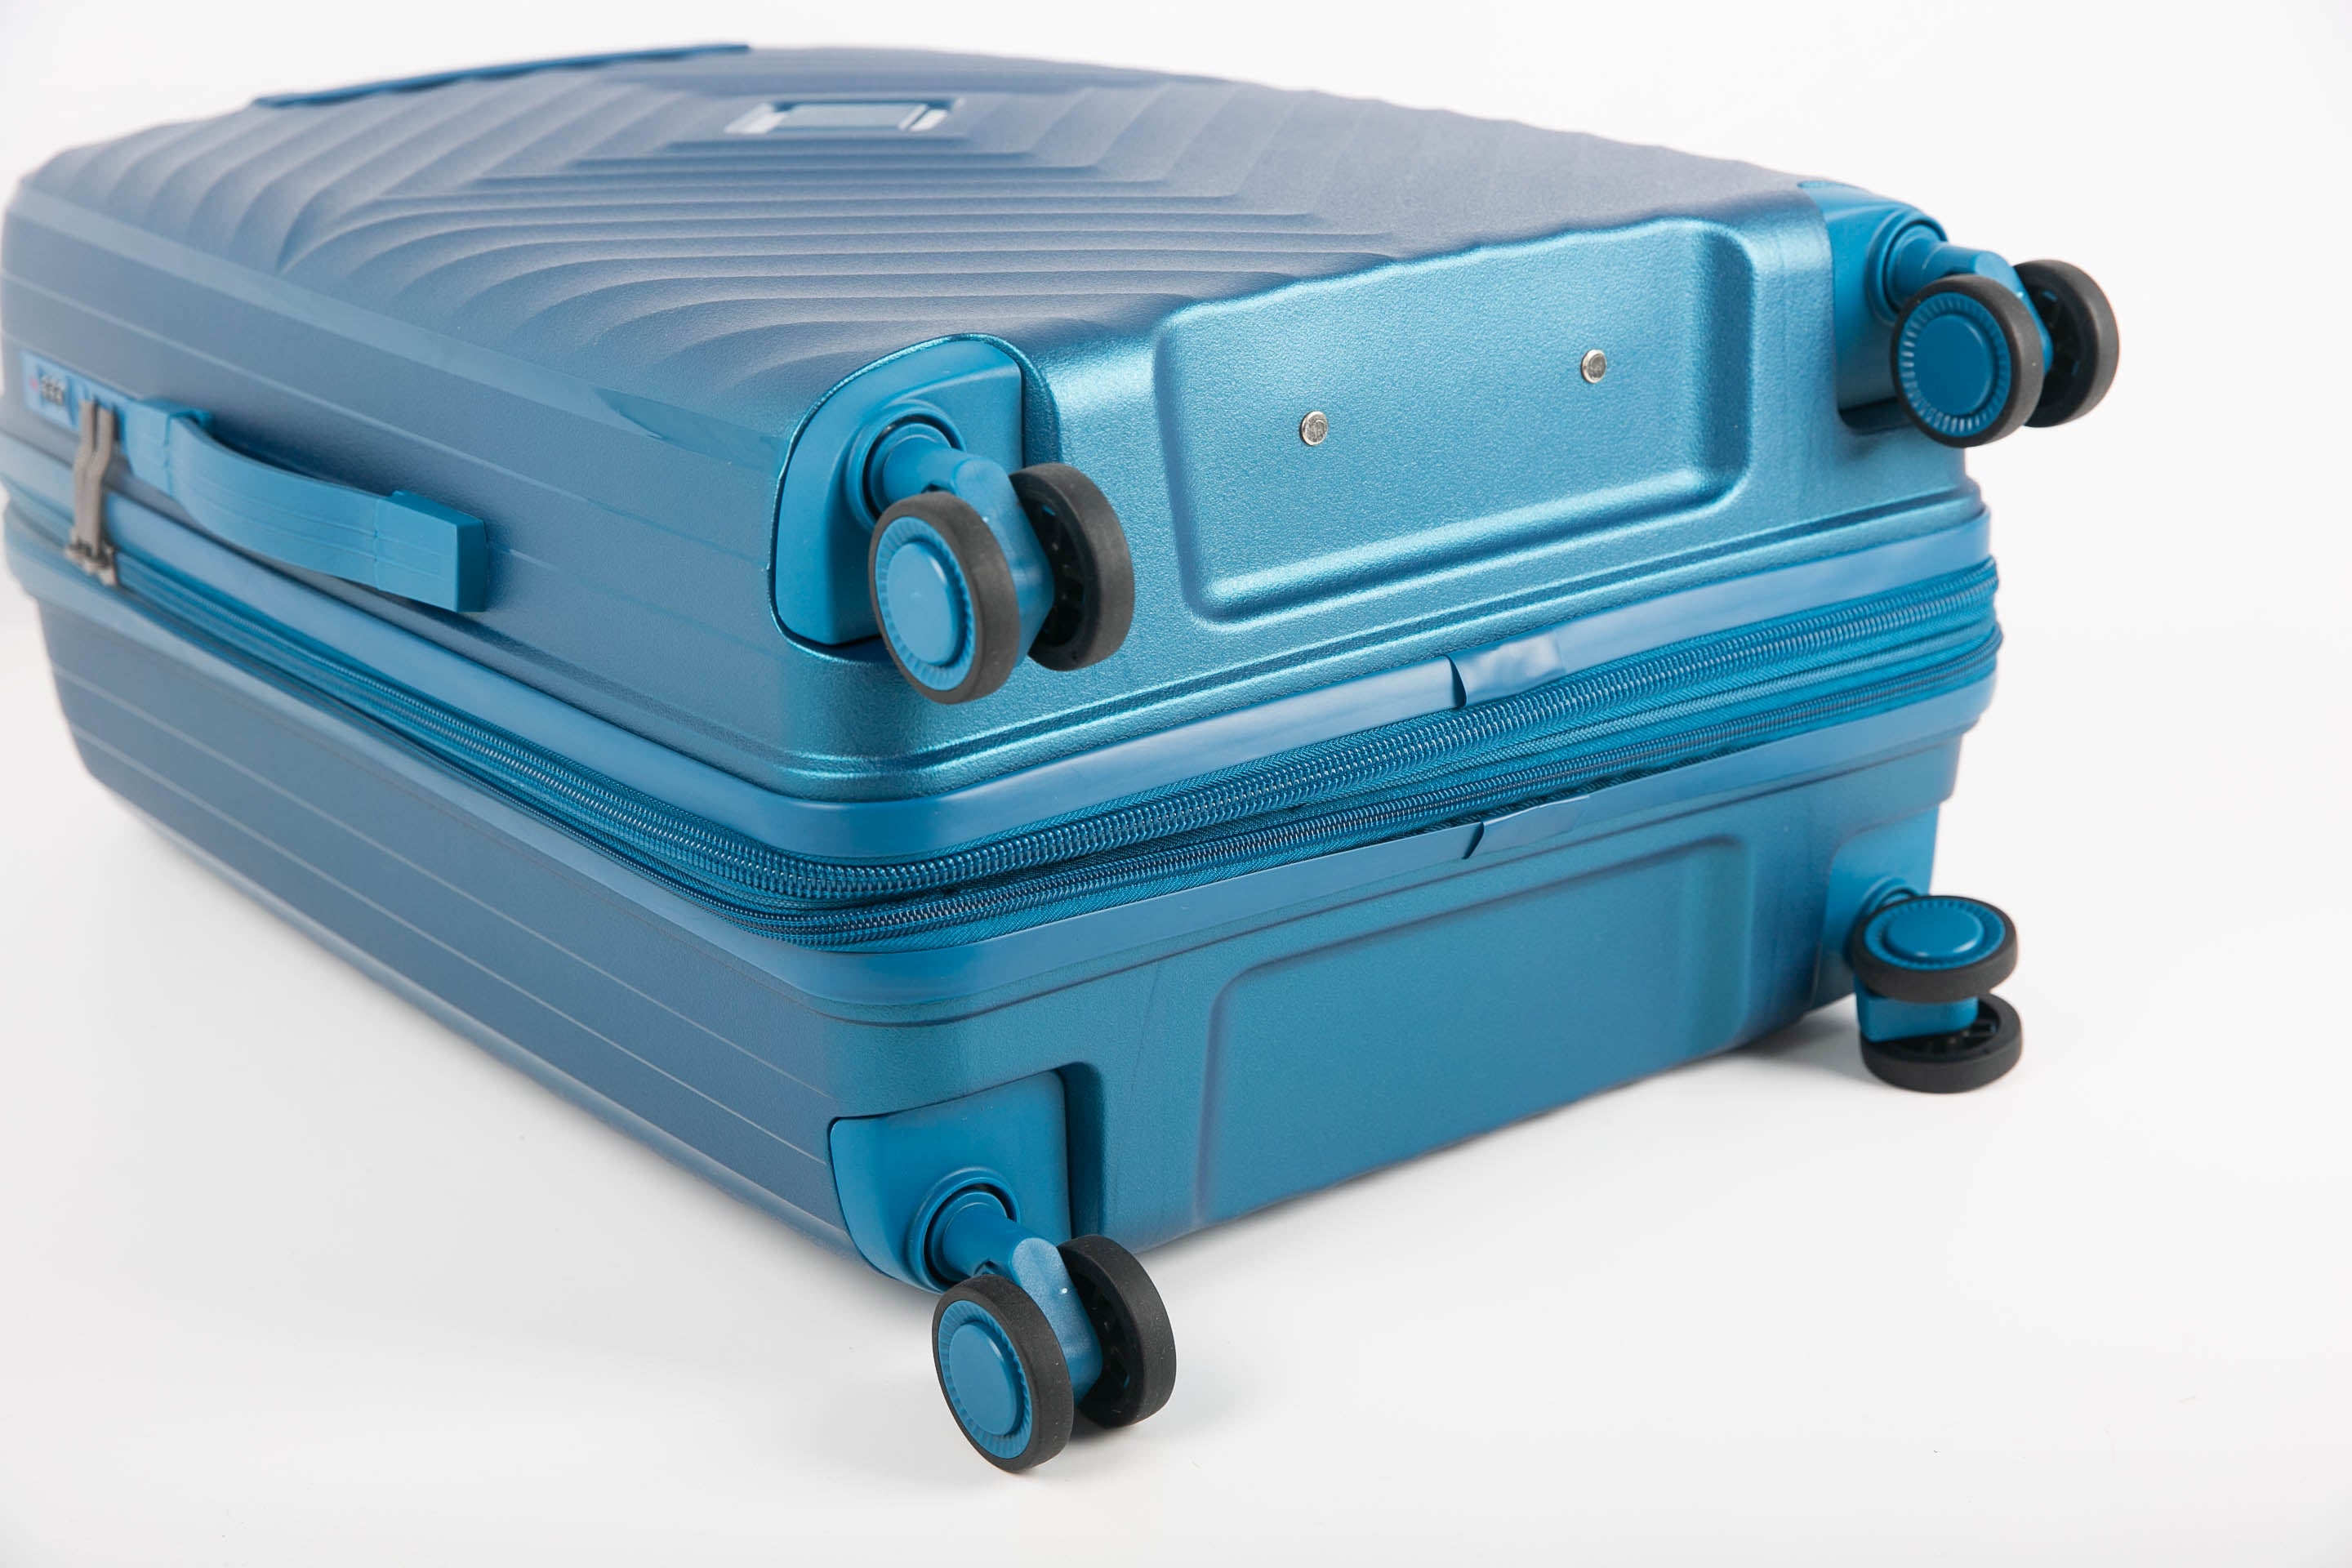 סט  3מזוודות, קשיחות דגם  Milan מבית המותג היוקרתי POLO CLUB